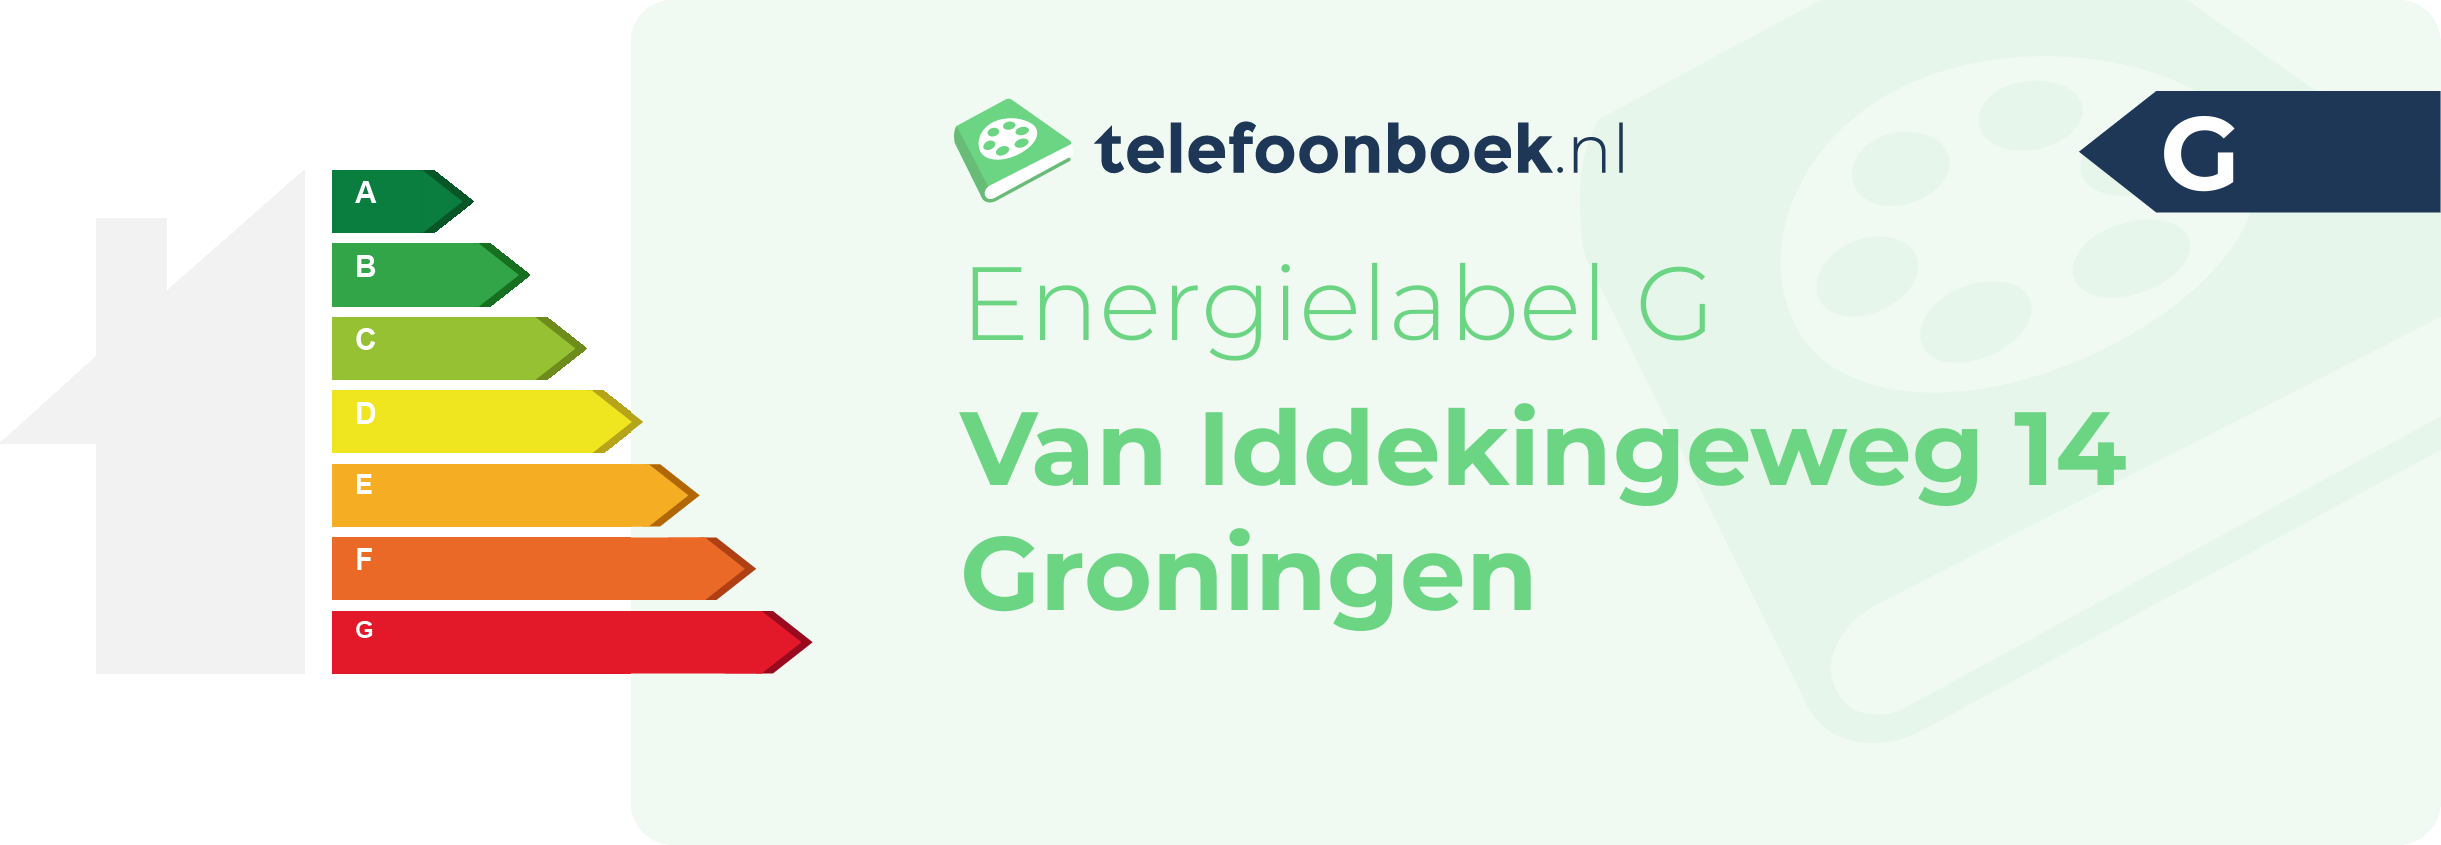 Energielabel Van Iddekingeweg 14 Groningen